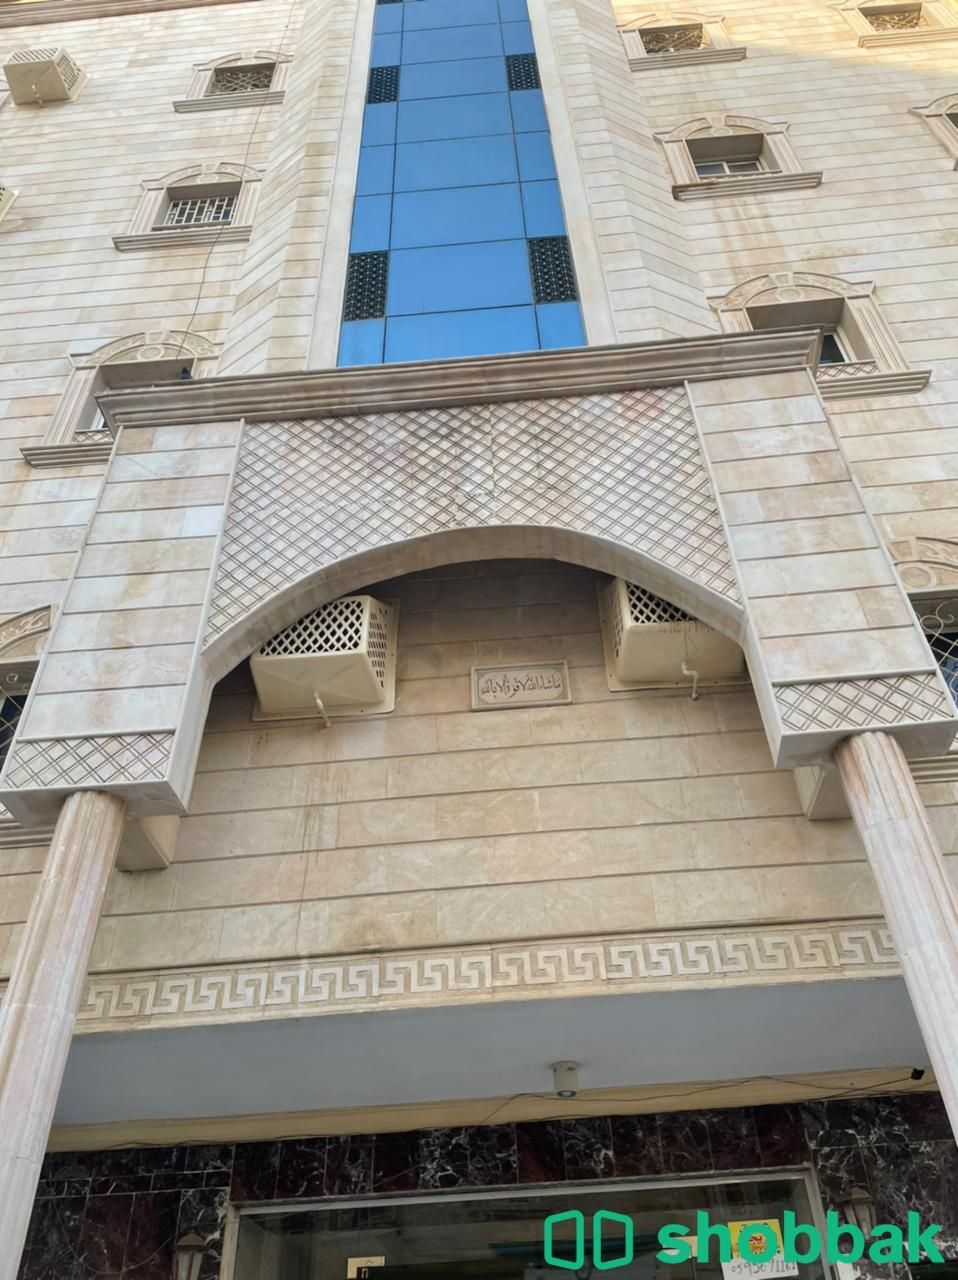 شقة رقم (٢) للإيجار - حي المروة Shobbak Saudi Arabia